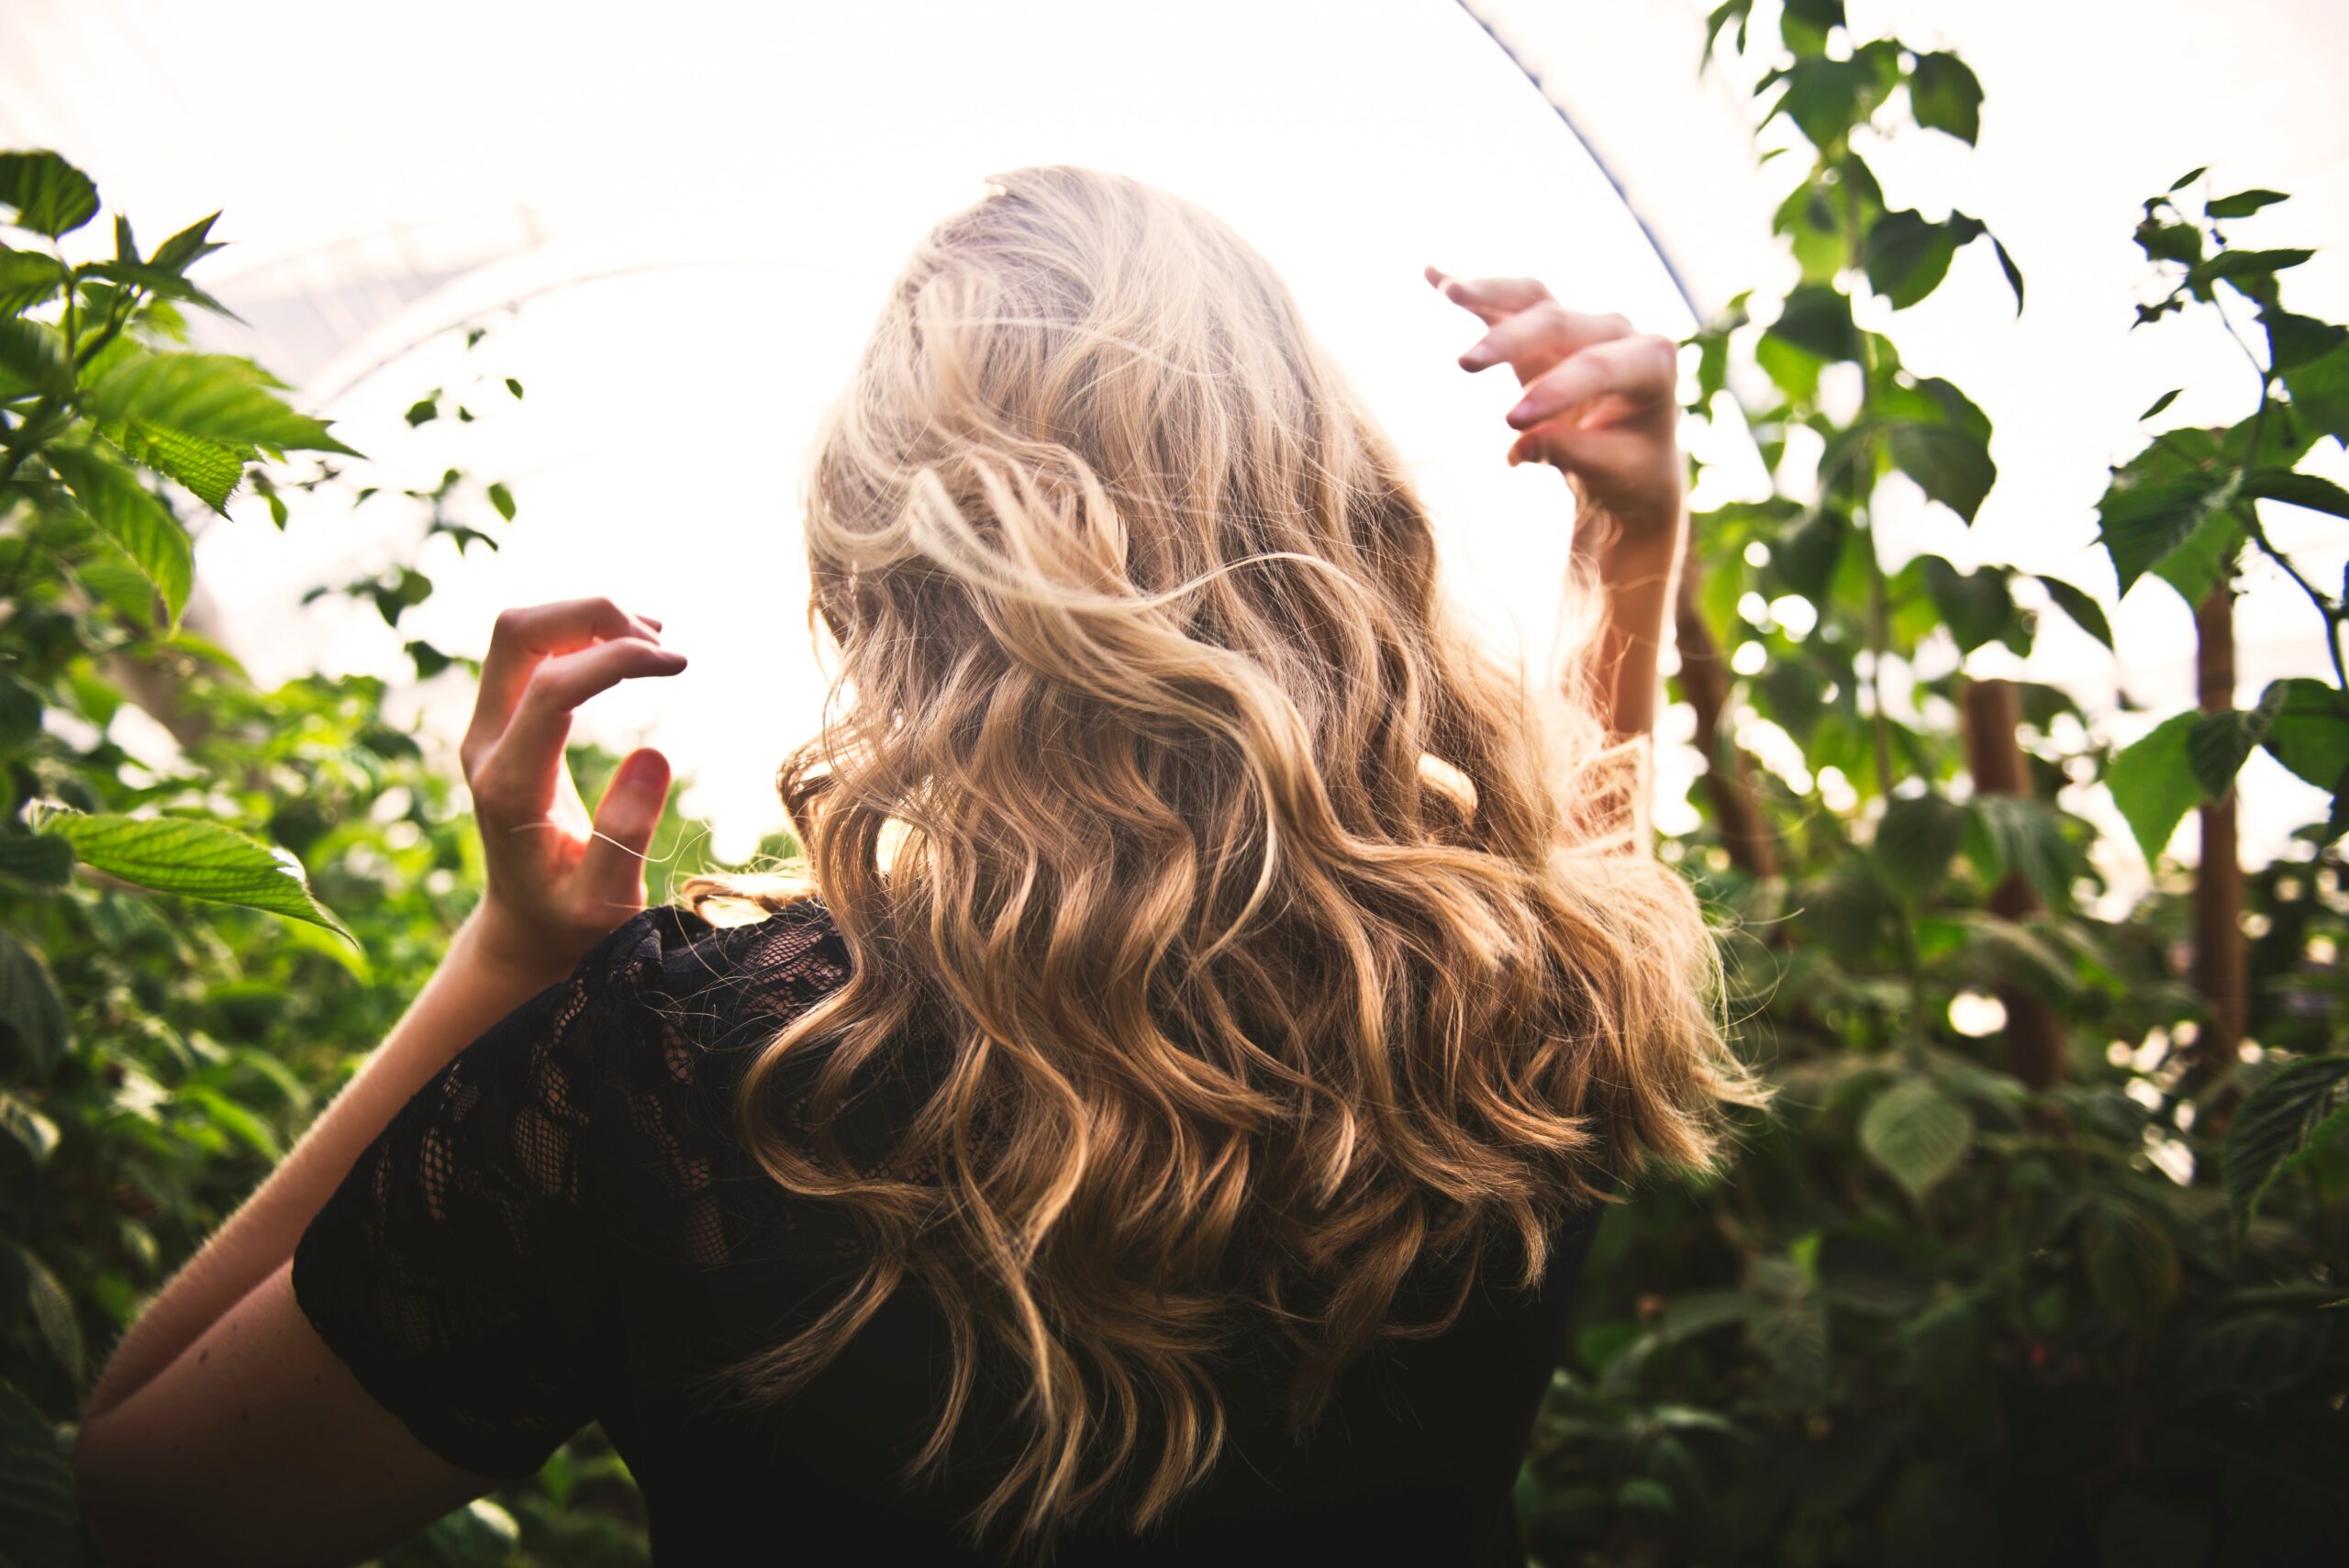 Lire la suite à propos de l’article Cheveux Ondulés & Routine naturelle : Le Guide Complet